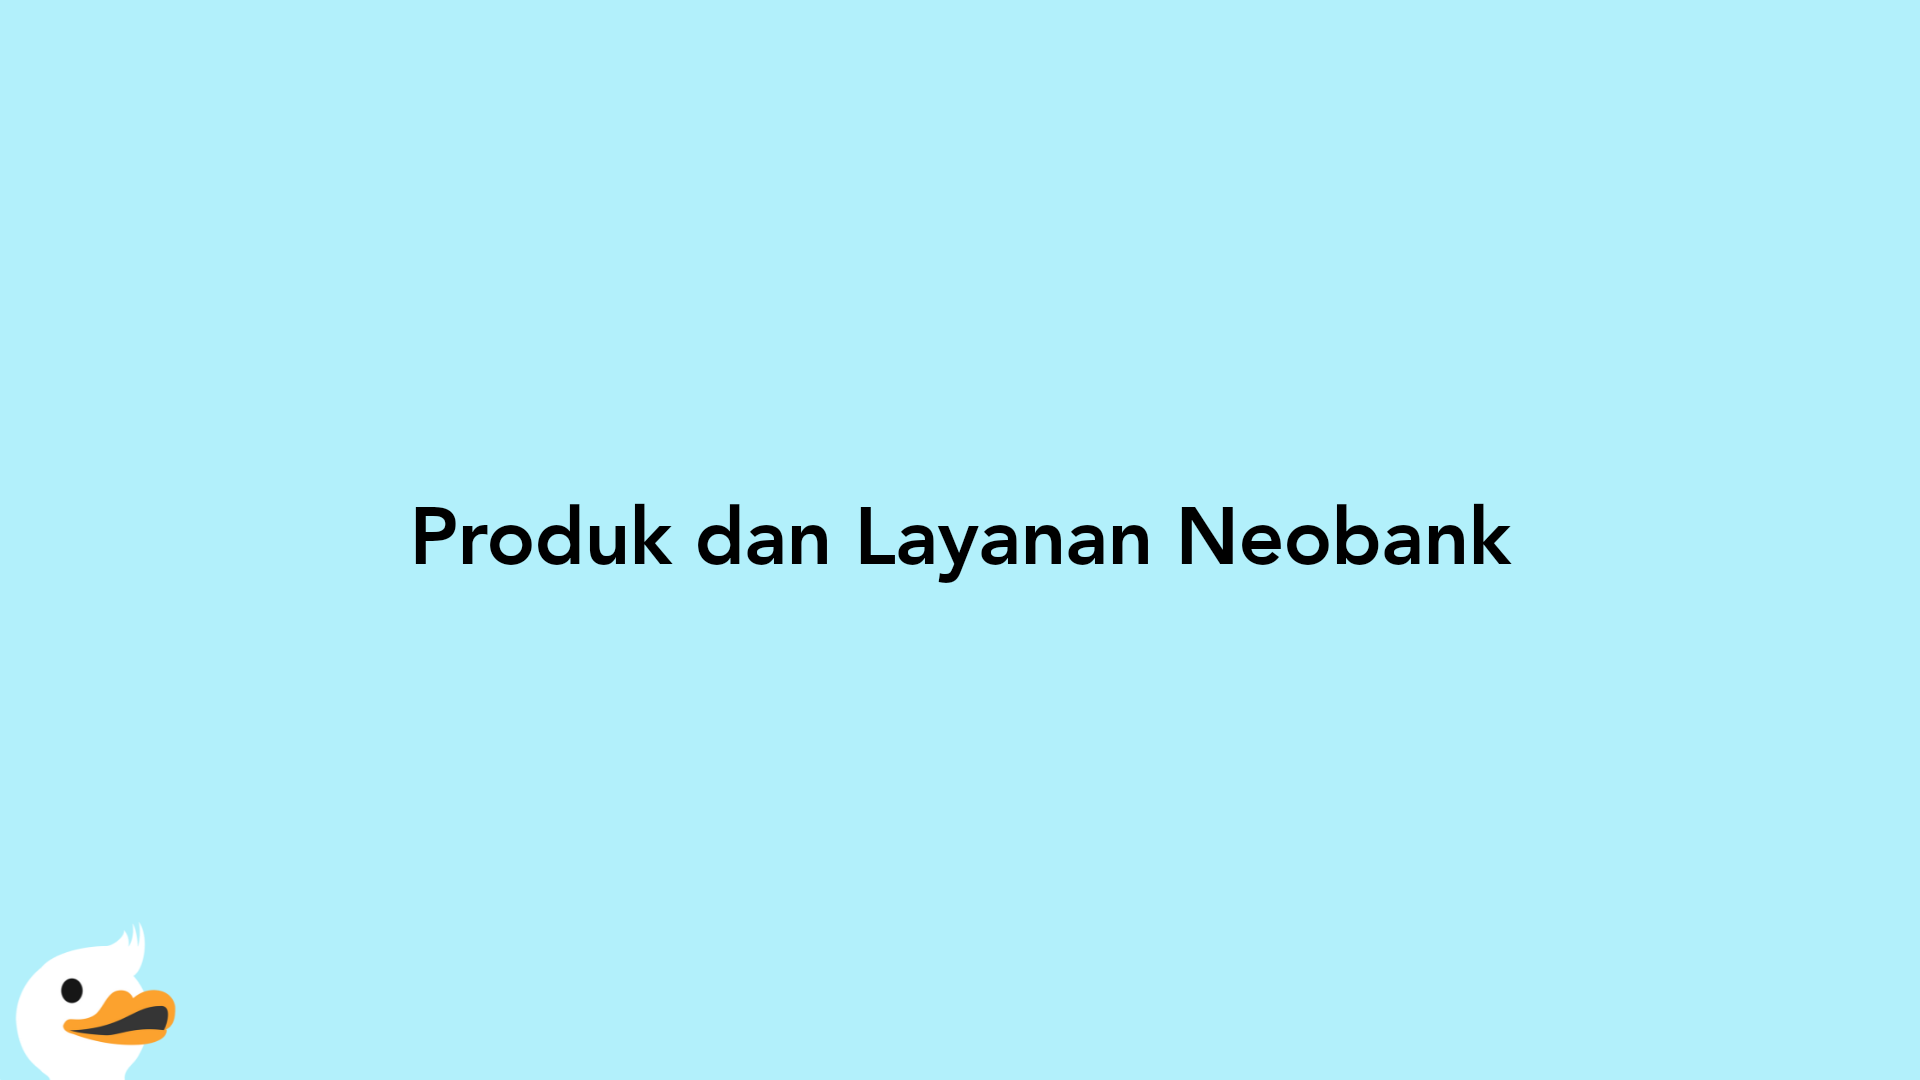 Produk dan Layanan Neobank